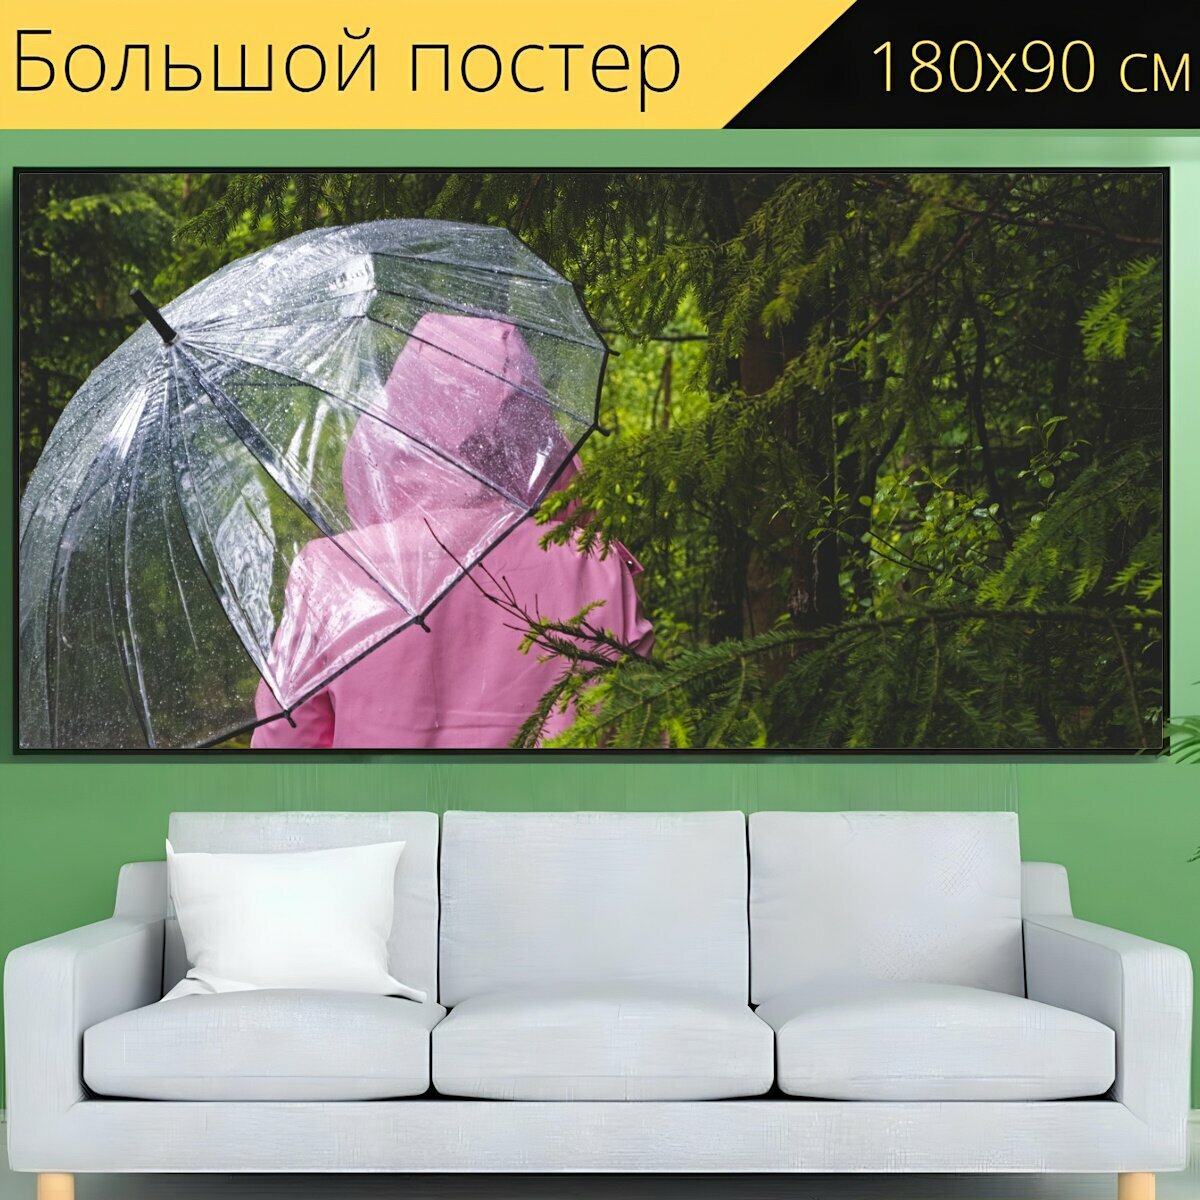 Большой постер "Зонтик, прозрачный, женщина" 180 x 90 см. для интерьера